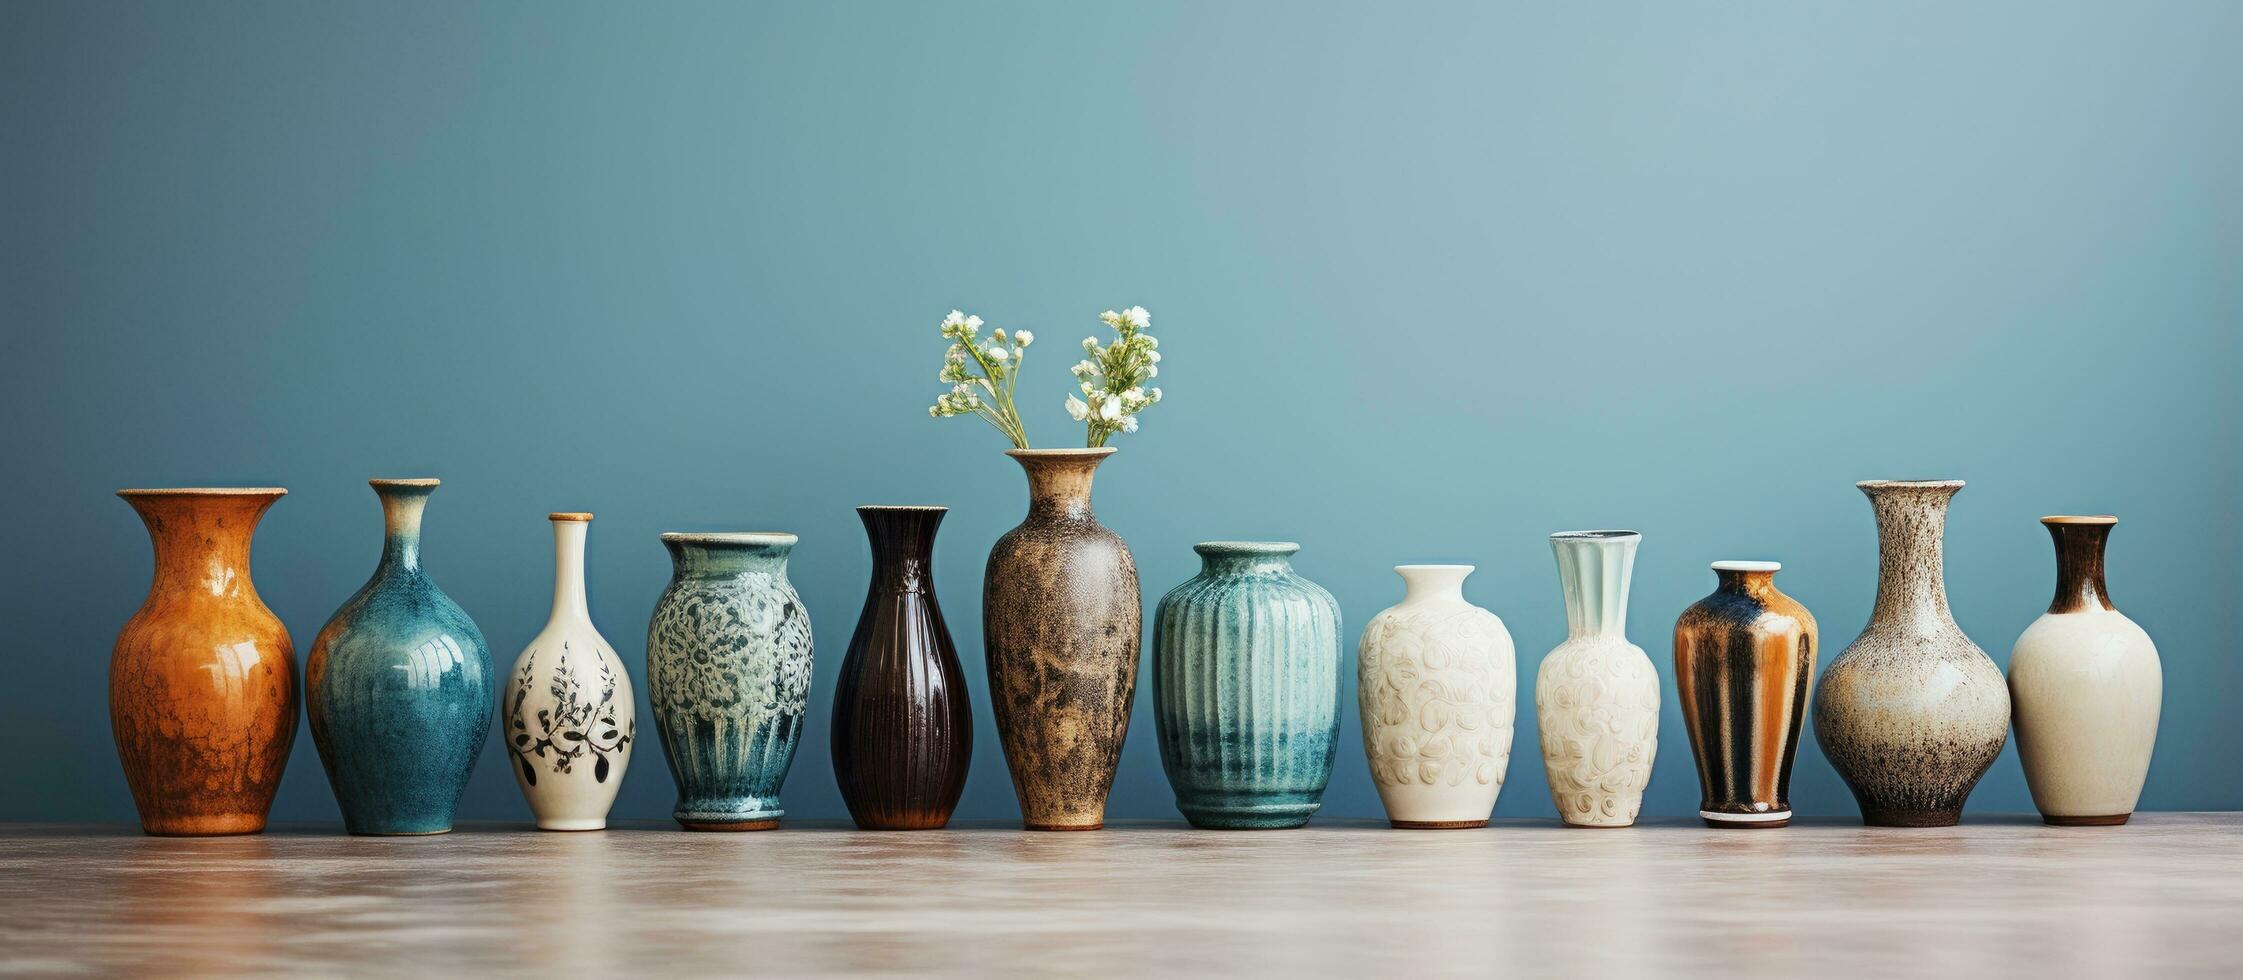 divers magnifique céramique des vases photo